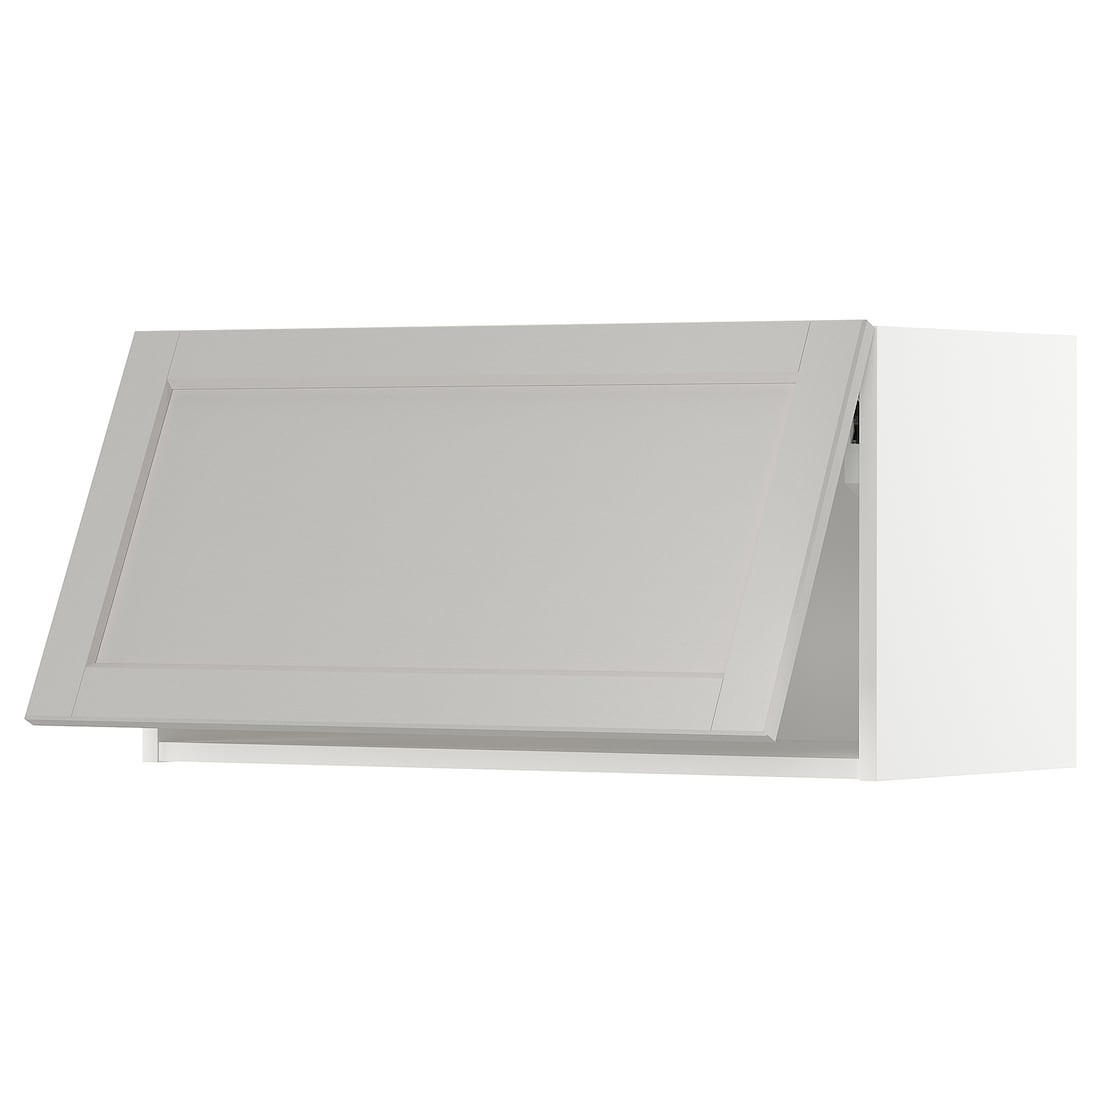 METOD МЕТОД Навесной горизонтальный шкаф, белый / Lerhyttan светло-серый, 80x40 см